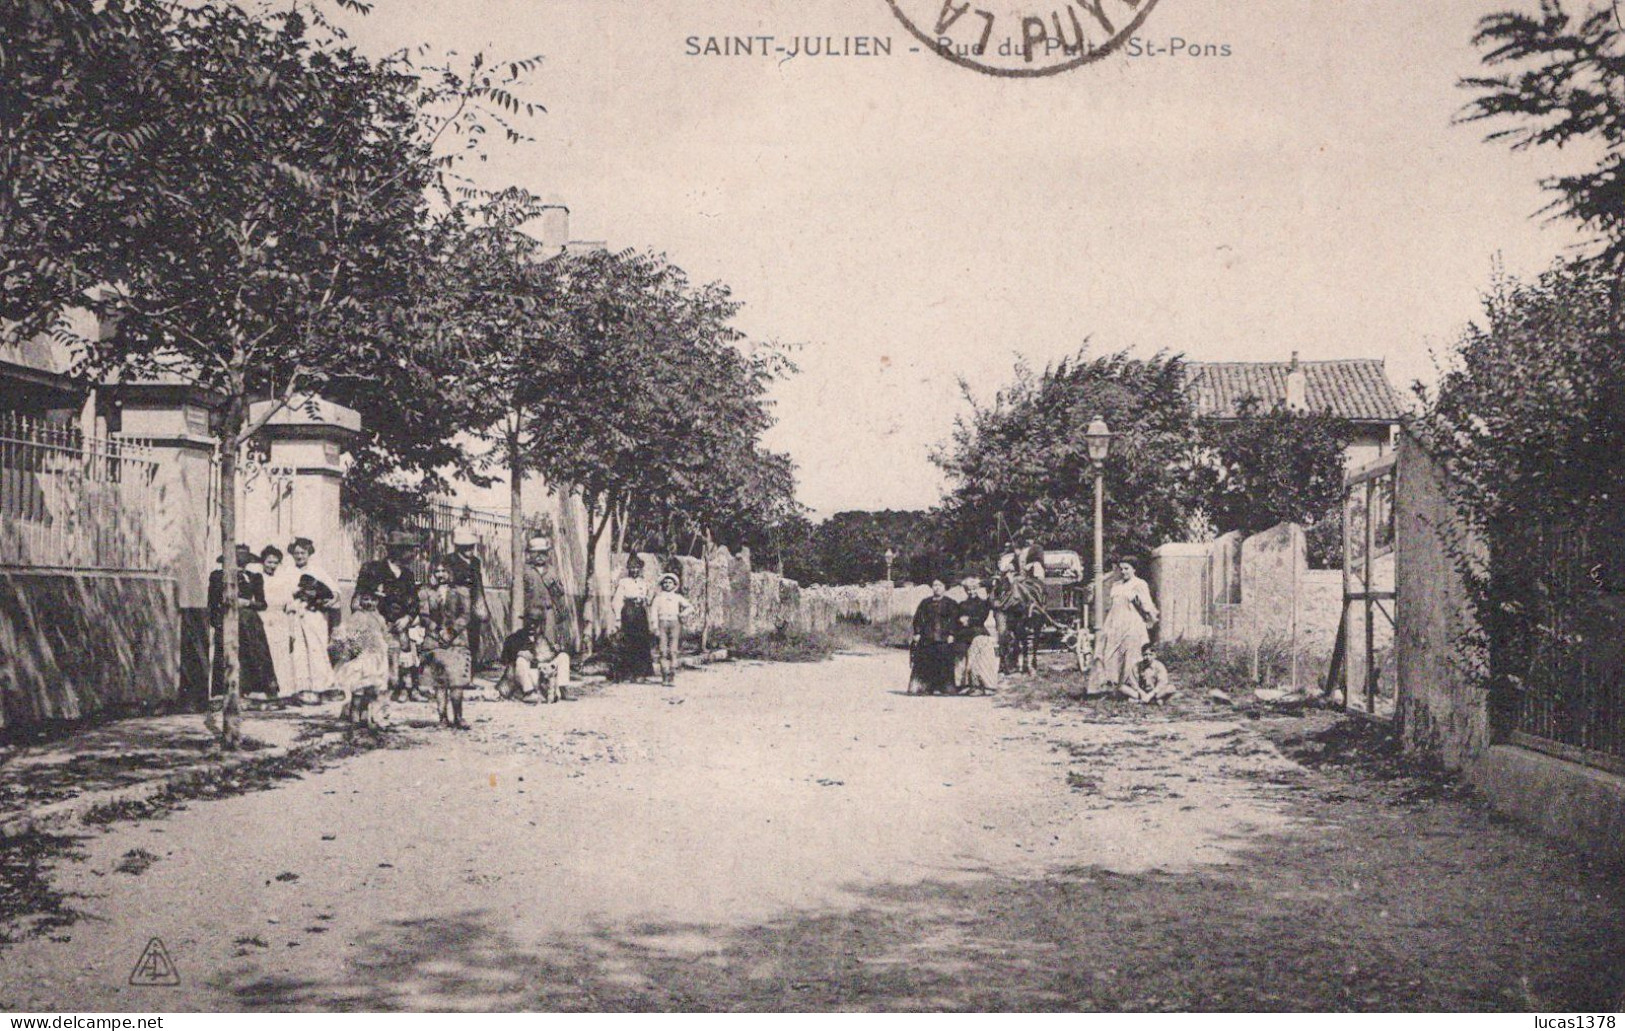 13 / MARSEILLE / SAINT JULIEN / RUE DU PETIT ST PONS / RARE + - Saint Barnabé, Saint Julien, Montolivet